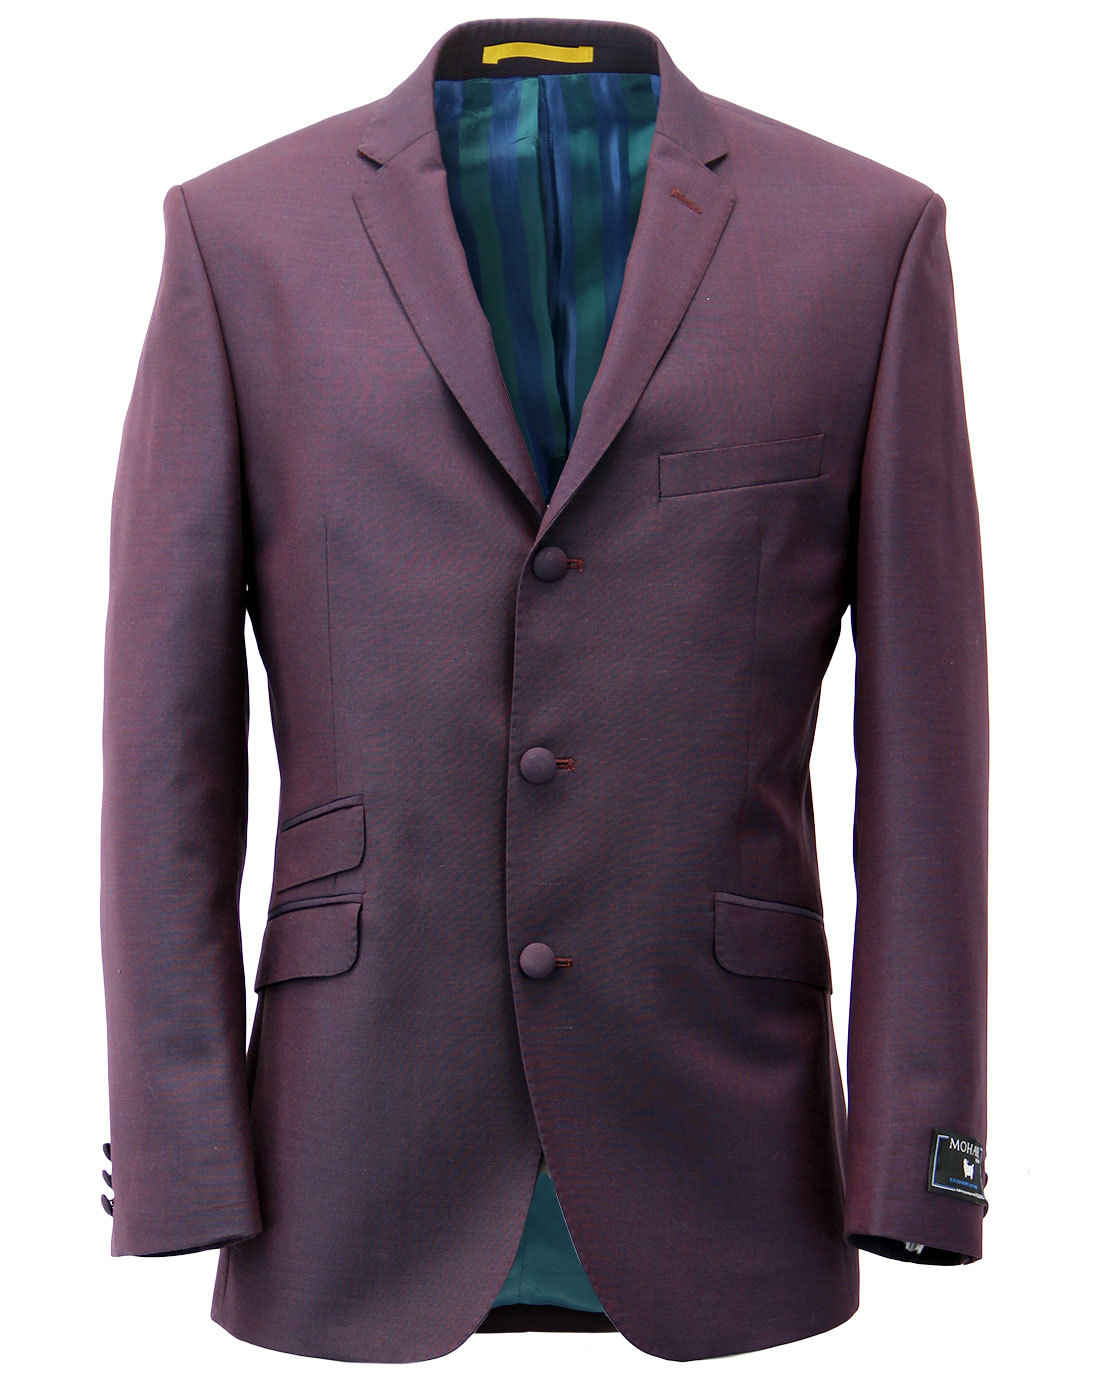 Retro 1960s Mod Mohair Blend 3 Button Suit Jacket